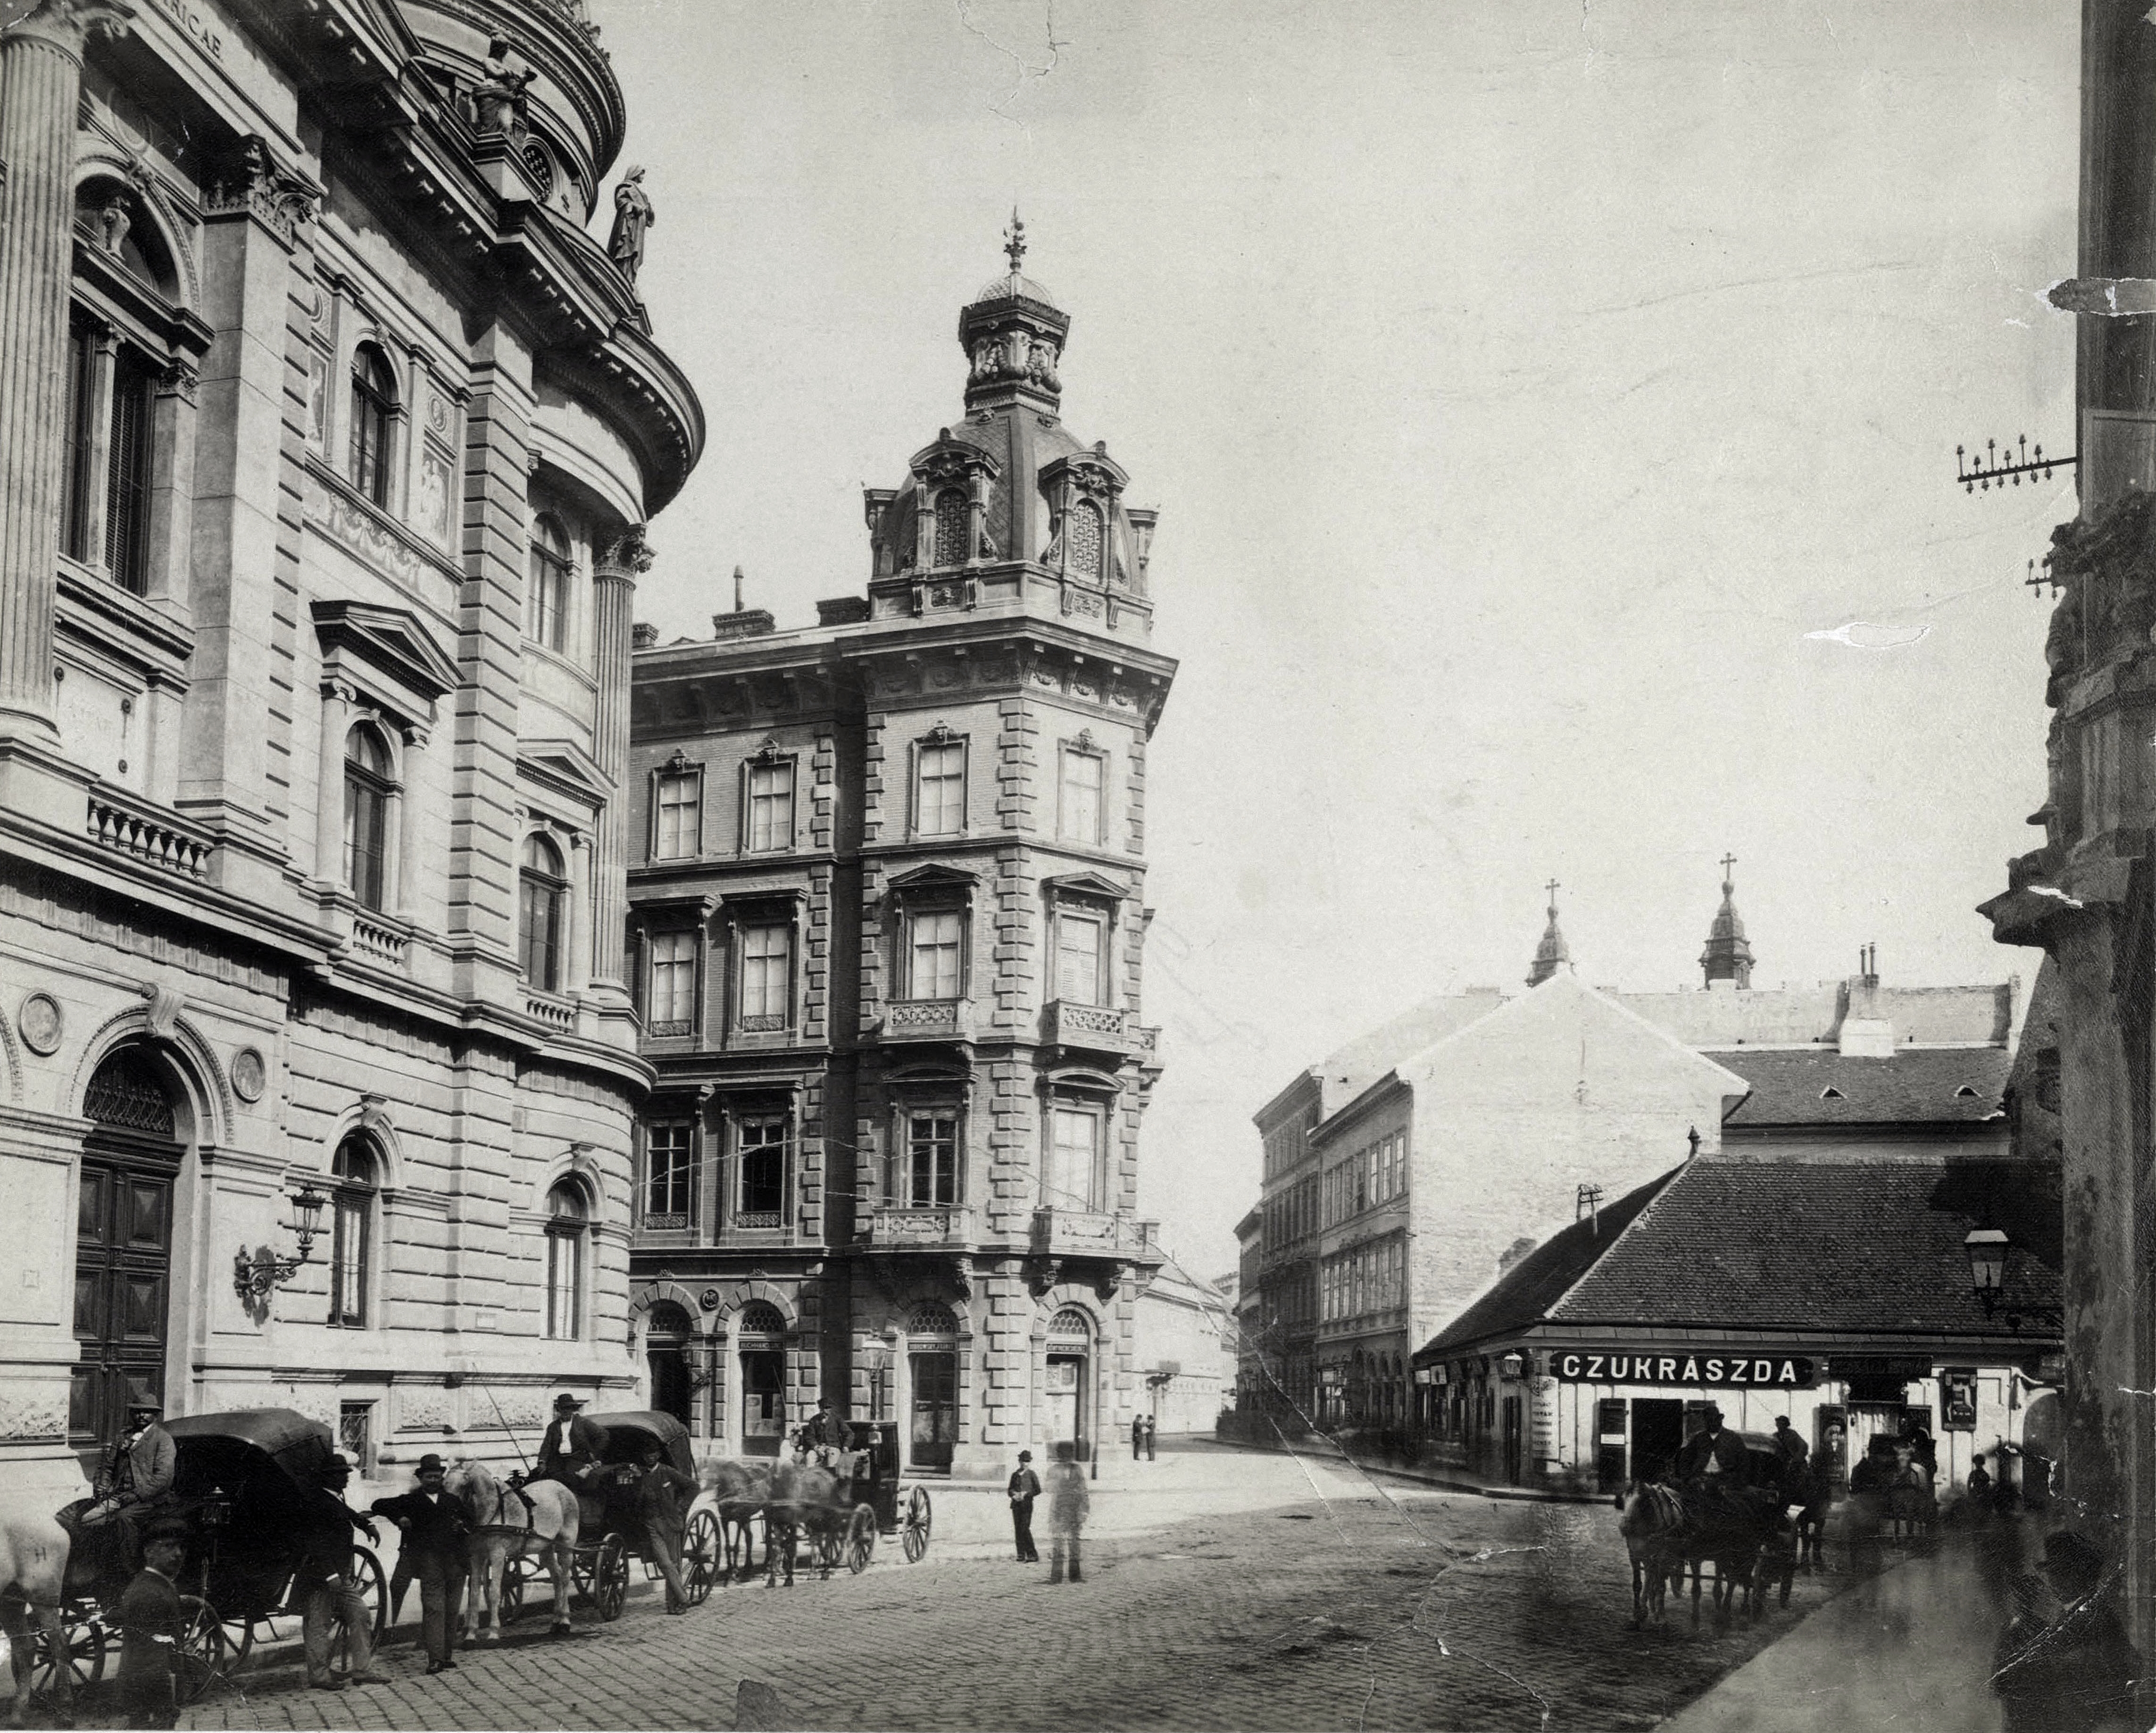 Fénykép az Egyetemi Könyvtár épületéről a XIX. századból